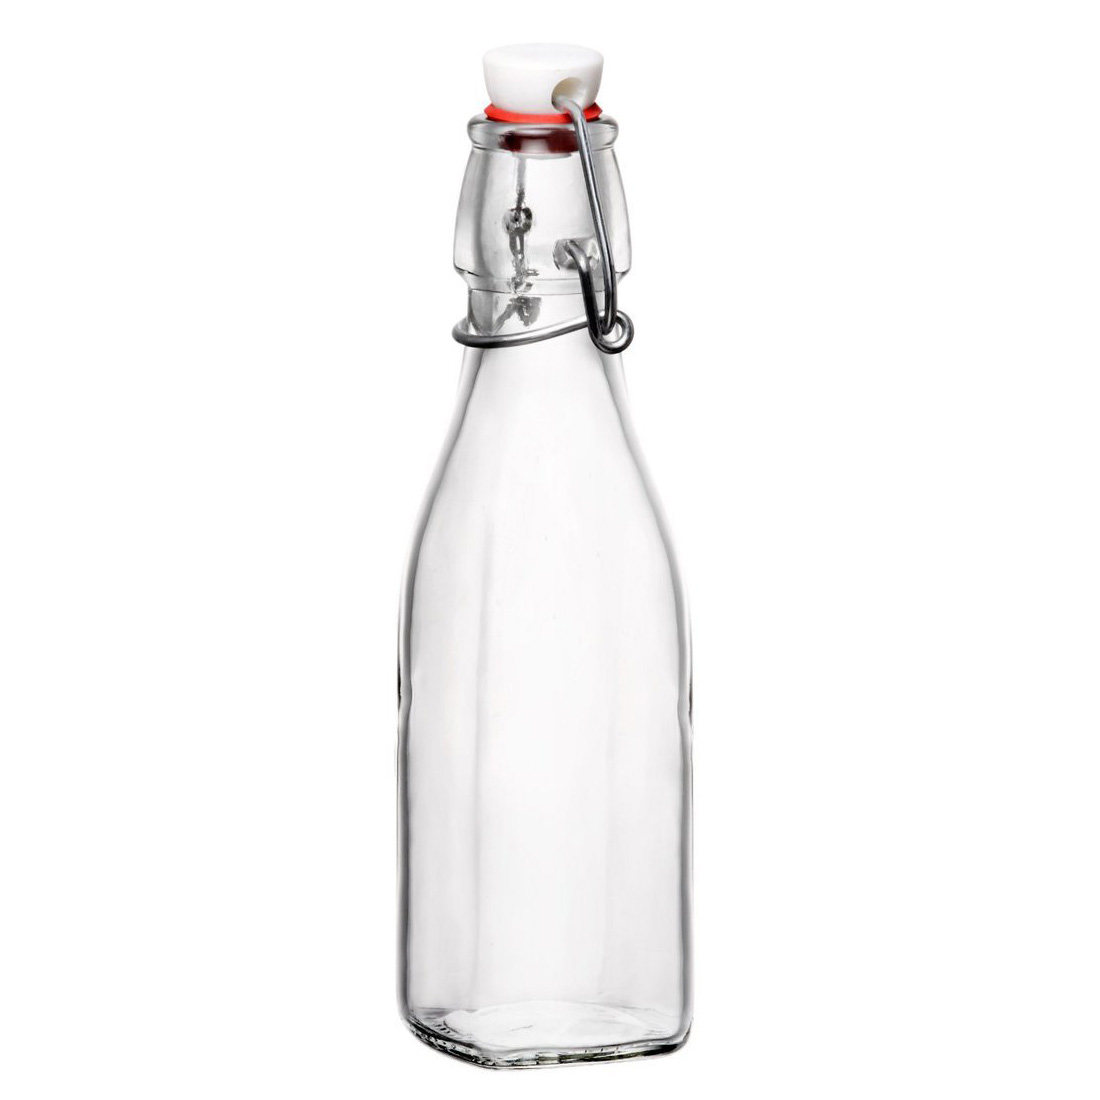 Бутылка Swing, 250 мл, 19 см, 6х6 см, Стекло, Bormioli Rocco, Италия